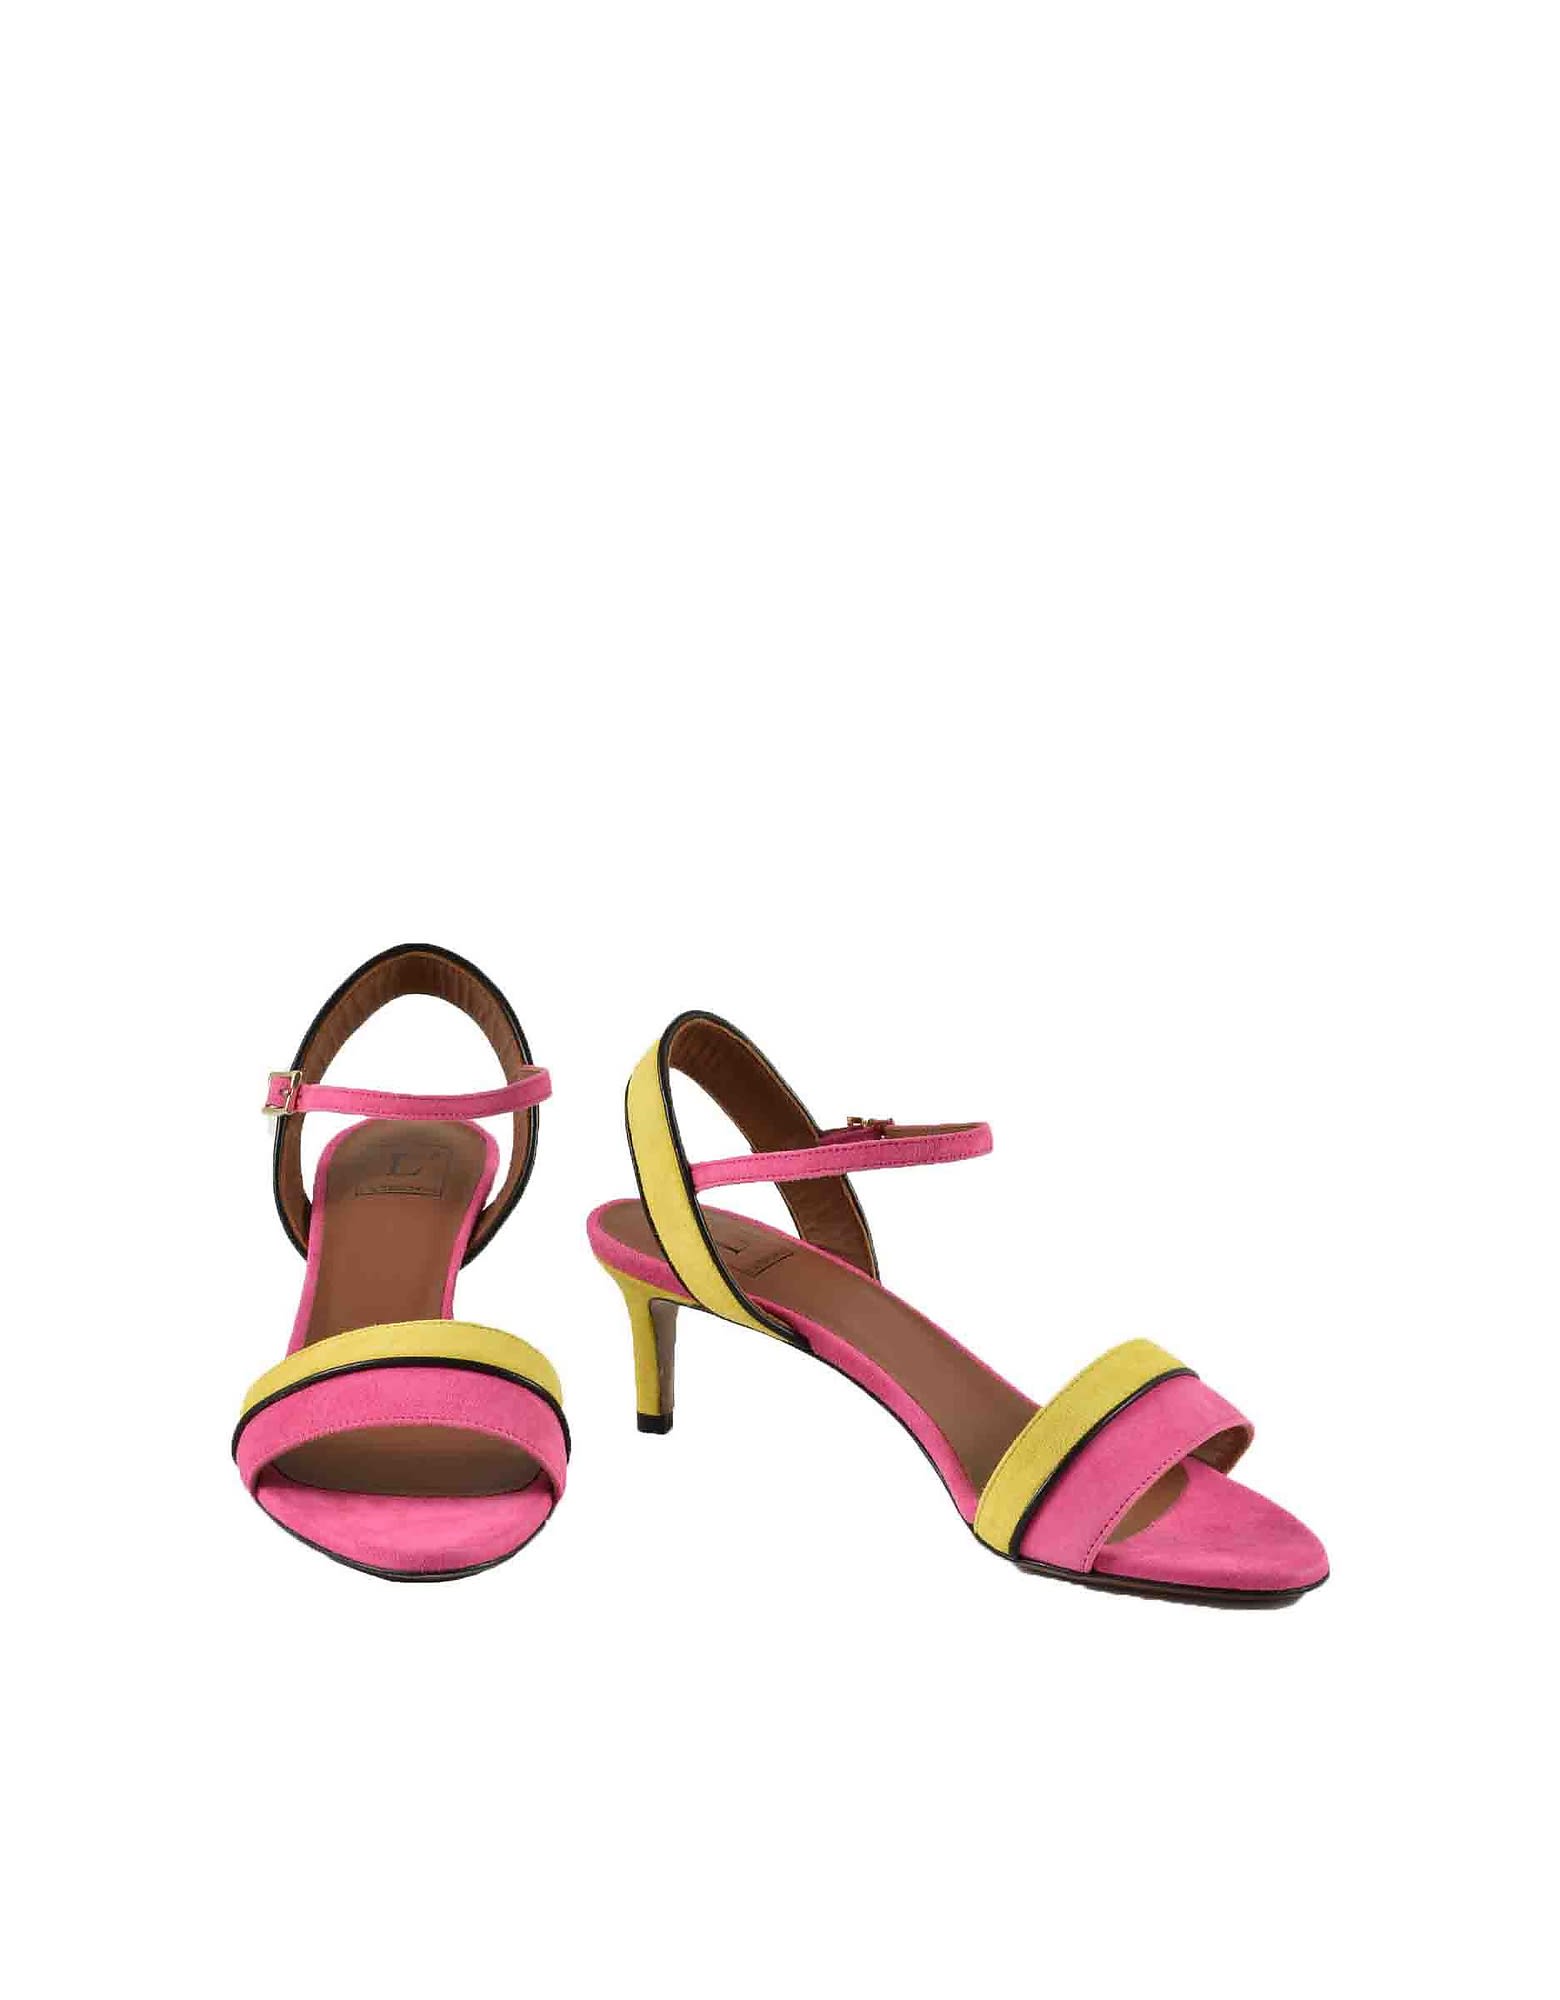 L'Autre Chose Womens Giallo/rosa Sandals